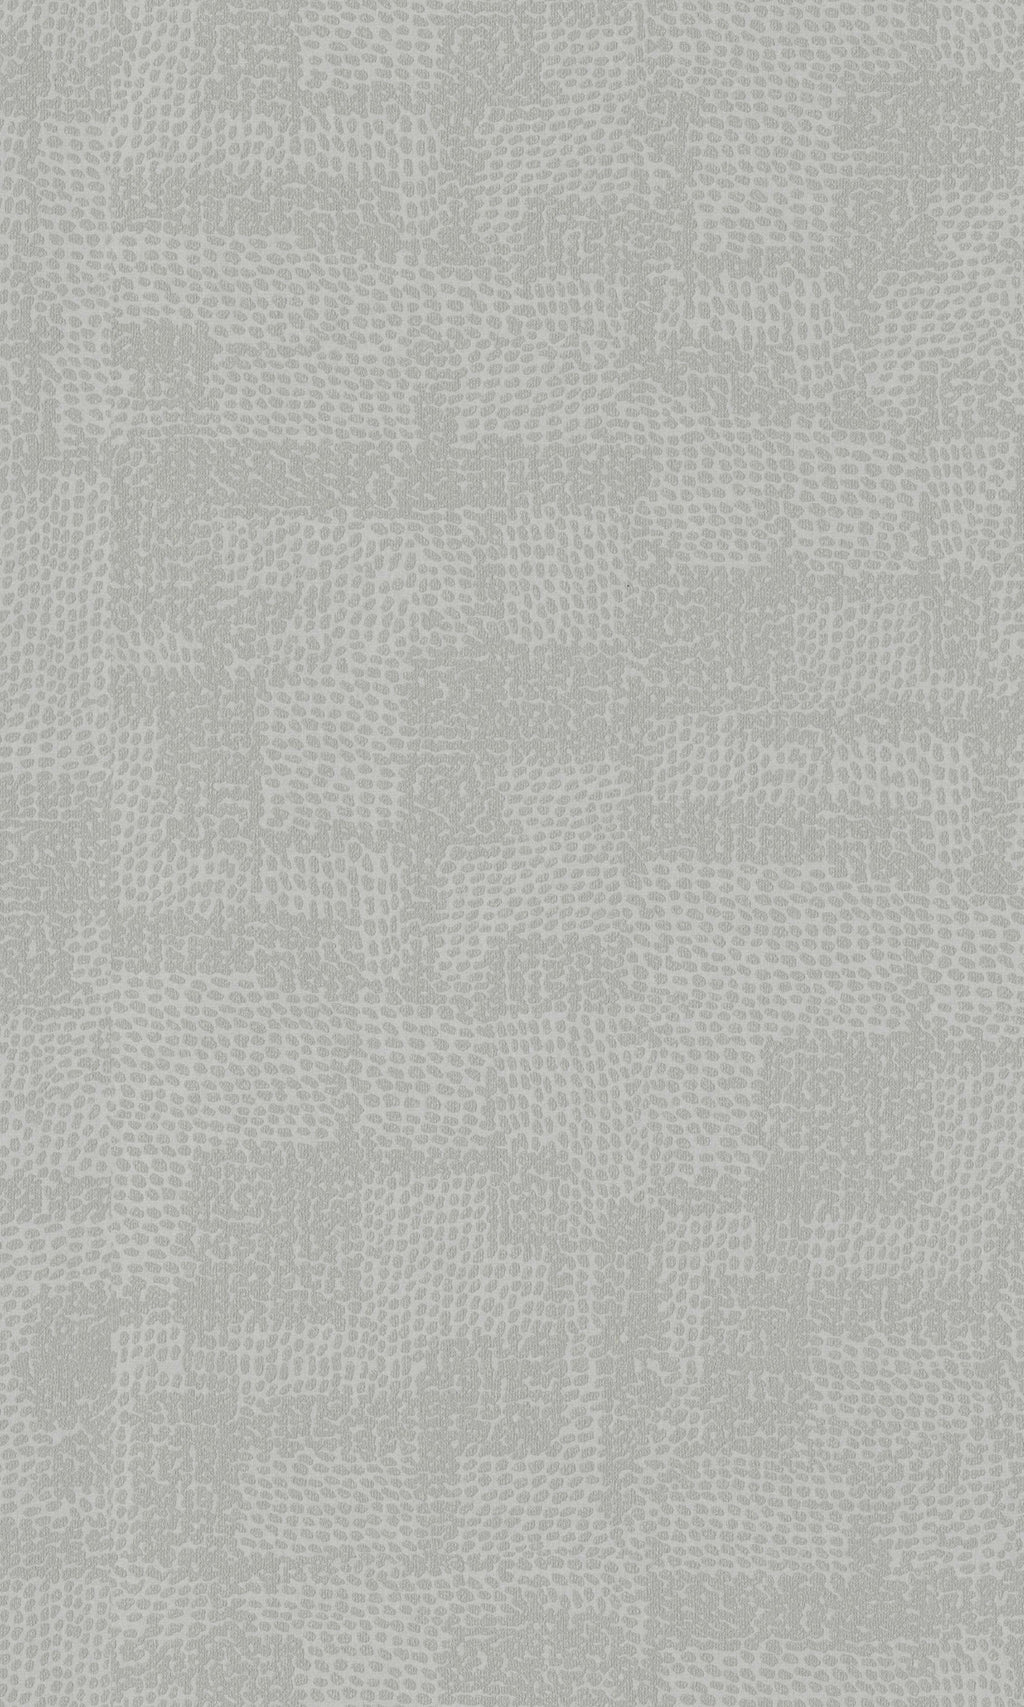 Greige Minimalist Textured Geometric Circles Wallpaper R8683